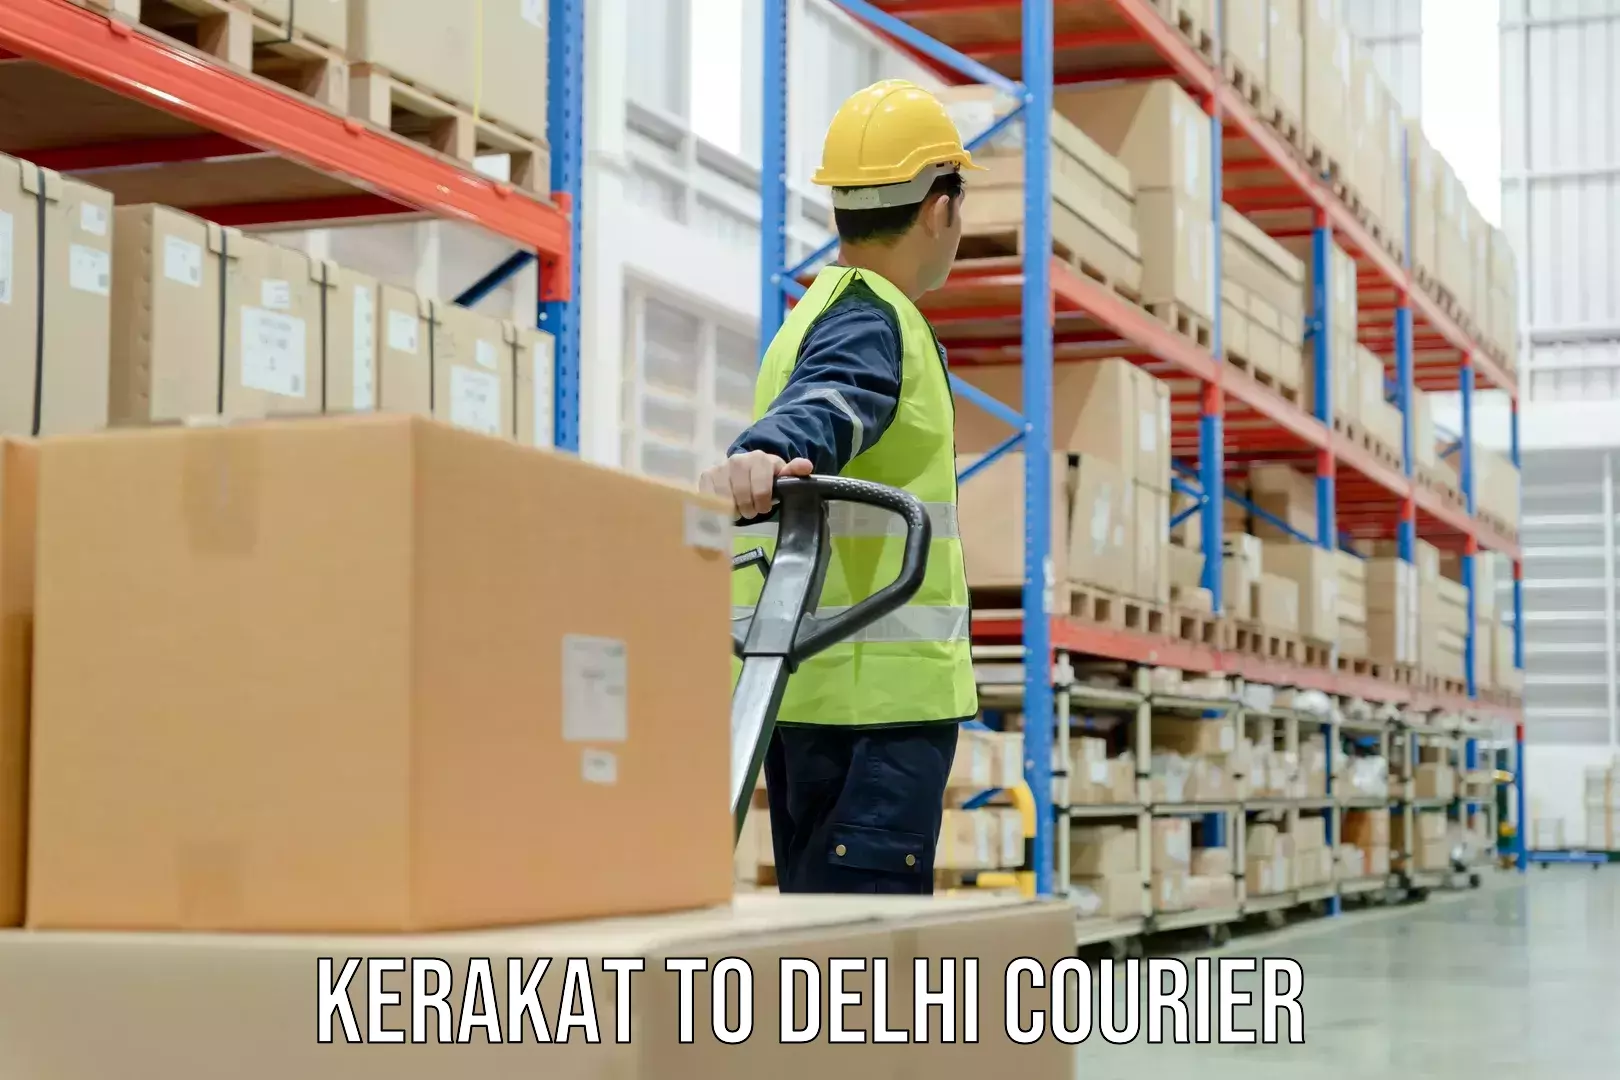 Scheduled delivery in Kerakat to University of Delhi